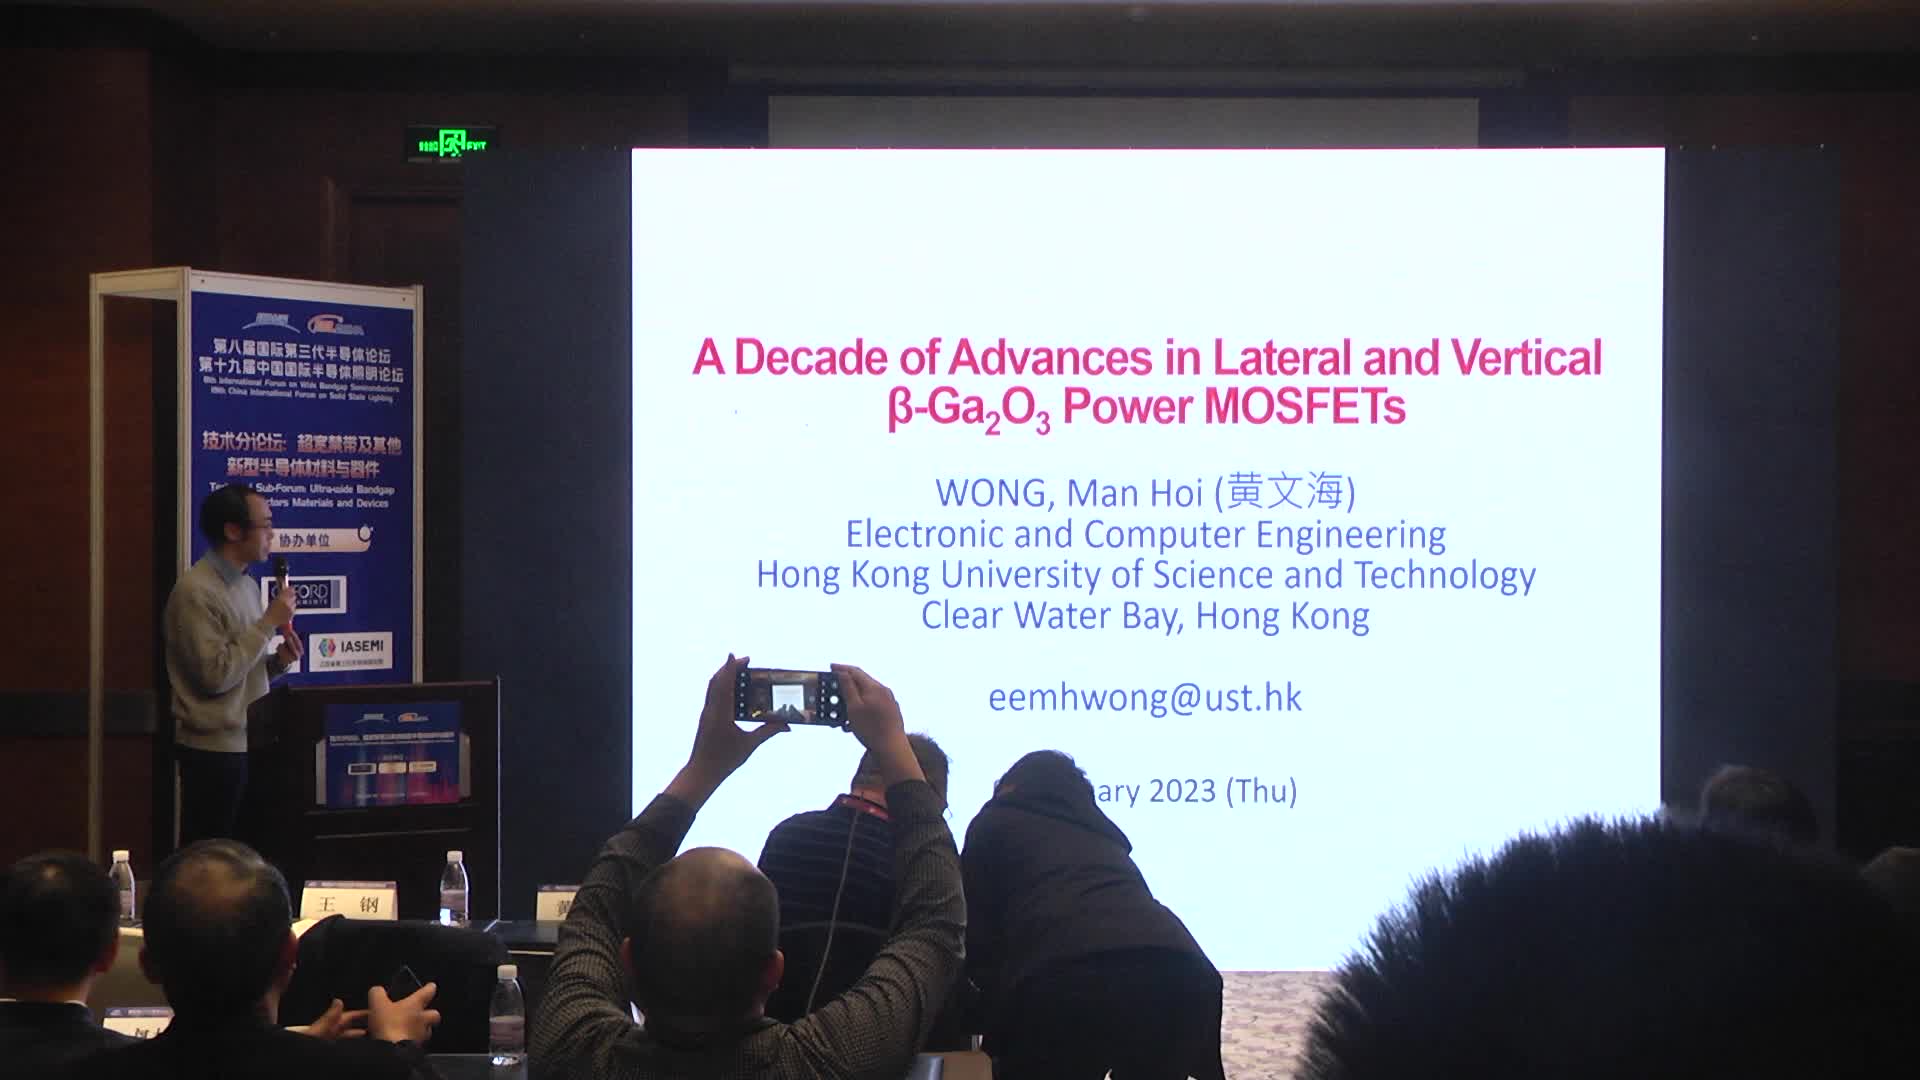 香港科技大学副教授黄文海：横向和纵向β-Ga2O3功率MOSFET的十年进展